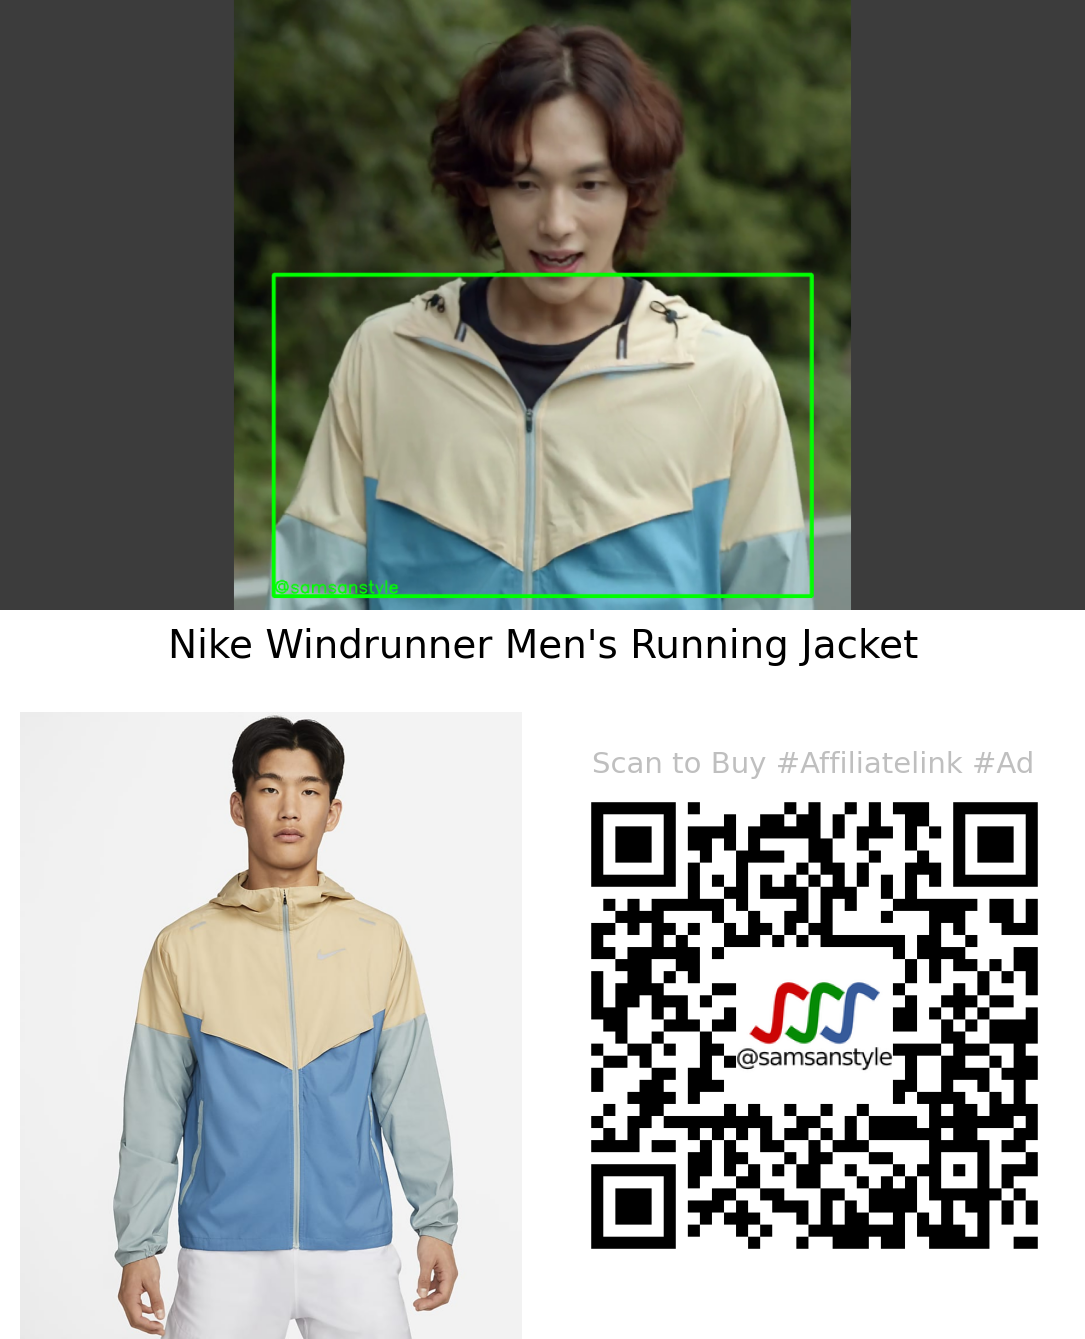 Im Siwan | Summer Strike E07 | Nike Windrunner Men’s Running Jacket